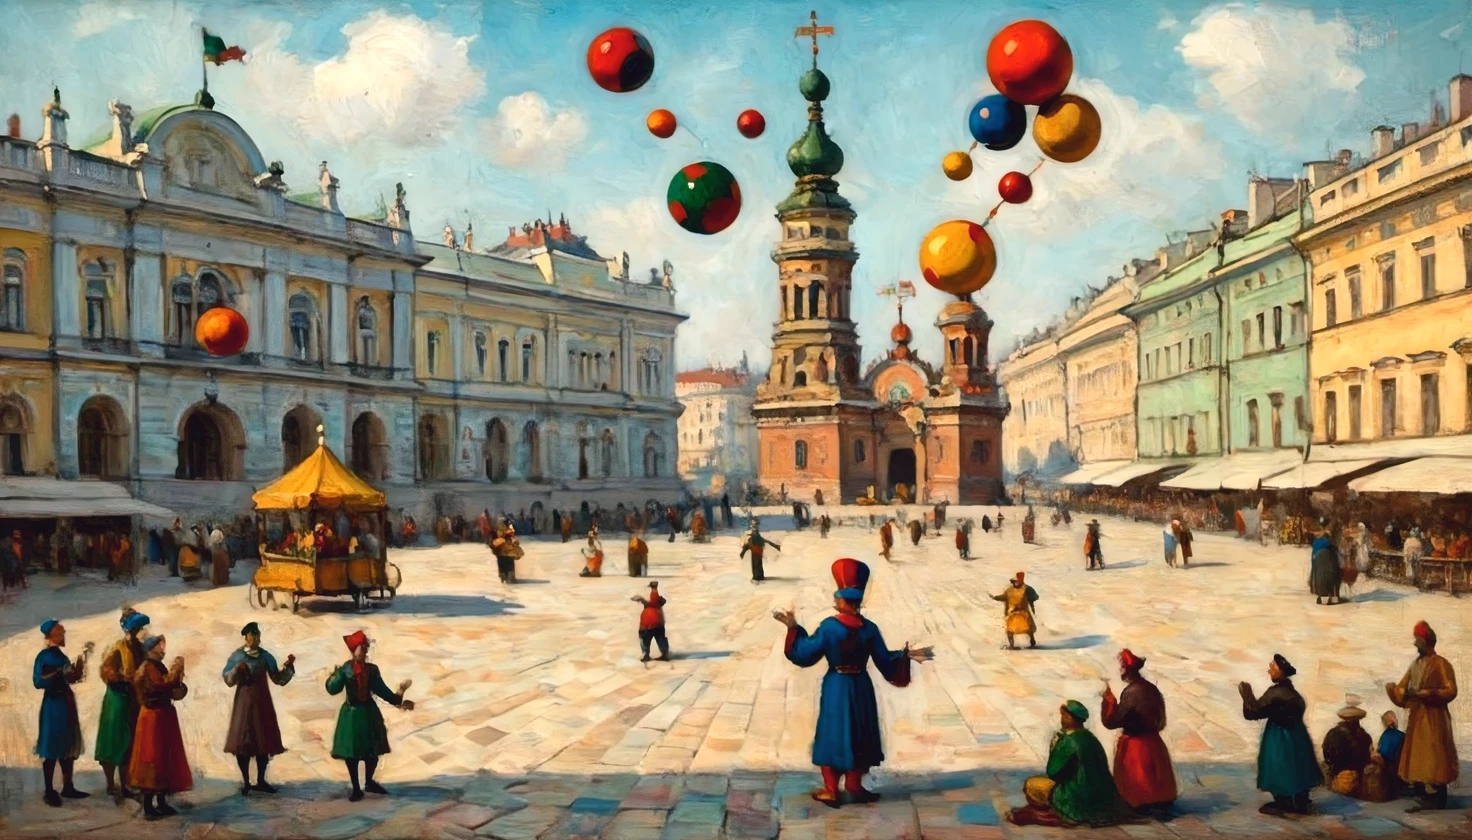 藝術家瓦西里·康丁斯基的布面油畫, ((小丑雜耍者)) 聖殿廣場上. 聖彼得堡, 小丑 (戏法):1.5 個多彩球, multi-colored balls rotate around 小丑, 完全符合瓦西里·康丁斯基的風格